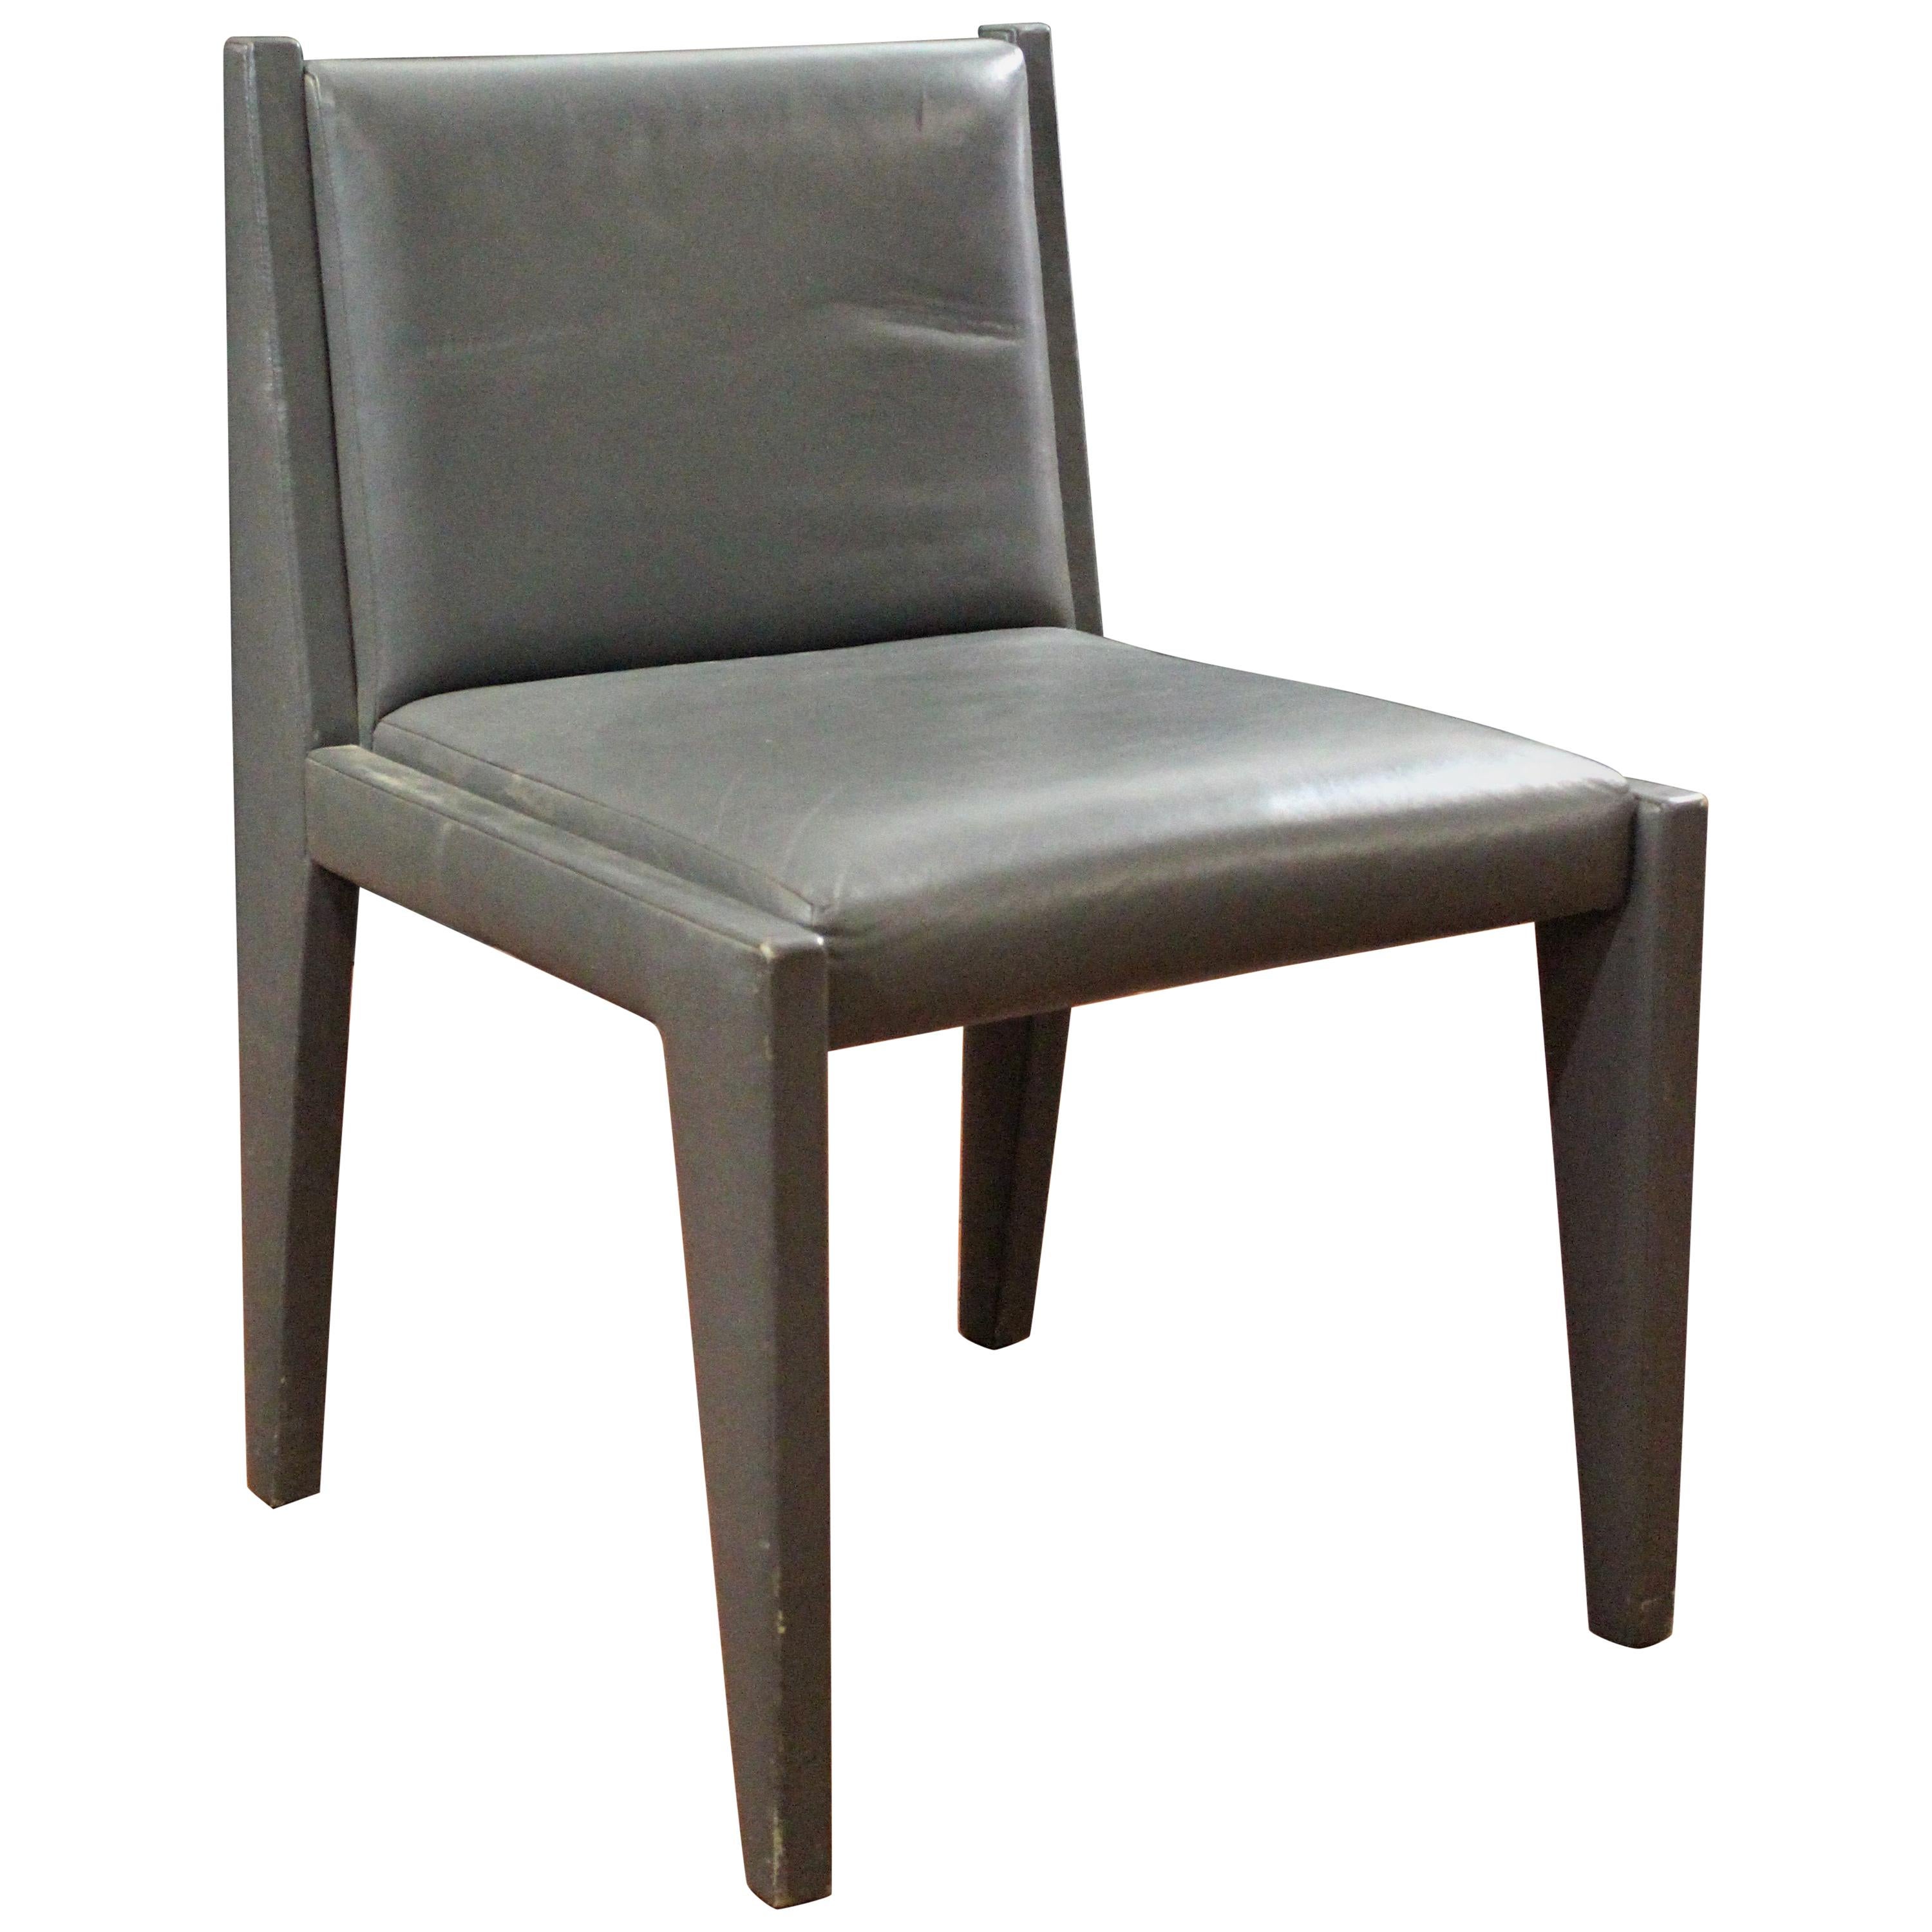 Chaise d'appoint chic et élégante en cuir recouverte de gris clair